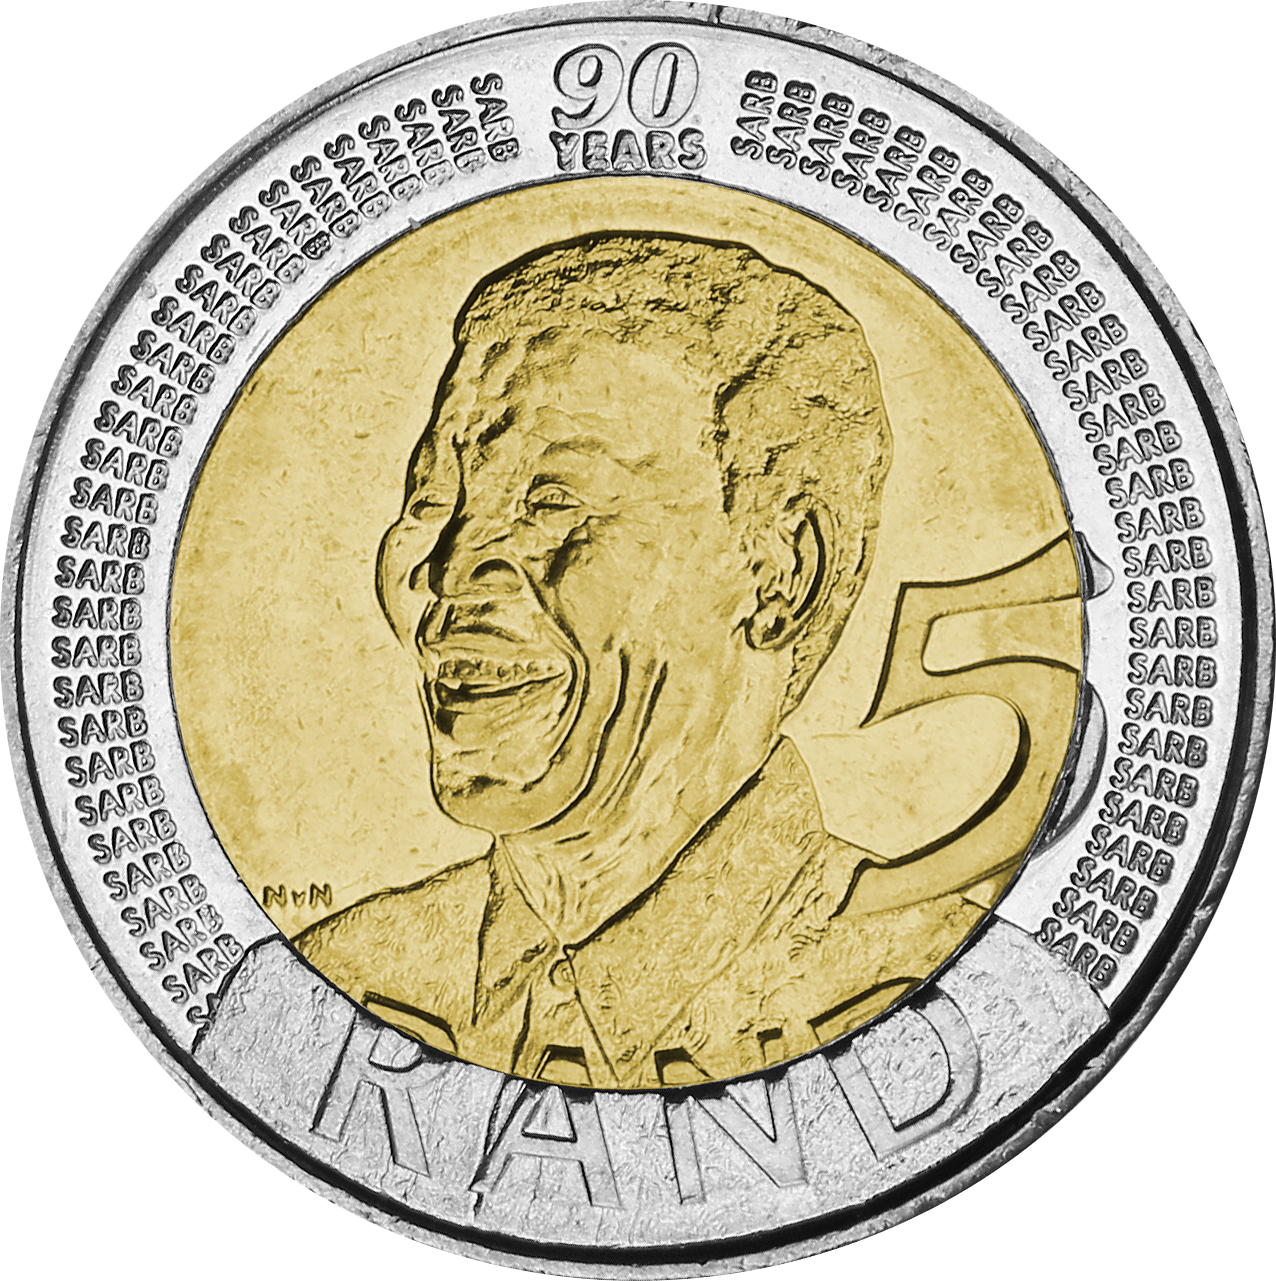 Exklusiv zur Erinnerung an eine große Persönlichkeit: Gedenkmünze Nelson Mandela mit offiziellem Kursmünzensatz!"